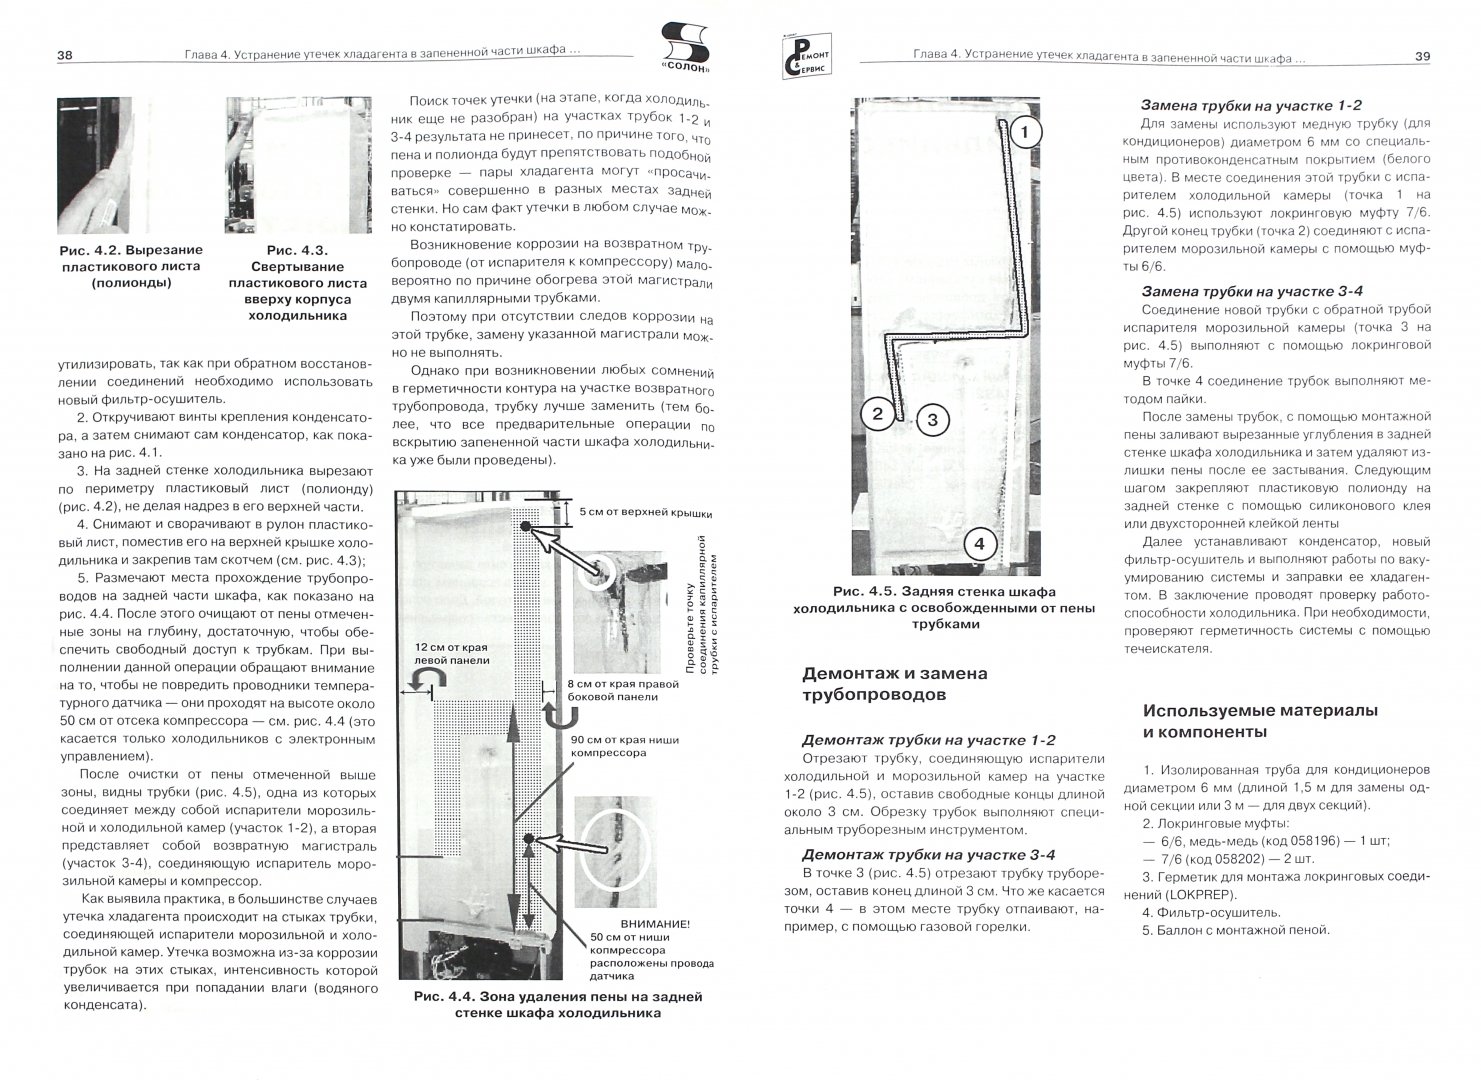 Иллюстрация 1 из 15 для Современные холодильники. Устройство и ремонт | Лабиринт - книги. Источник: Лабиринт